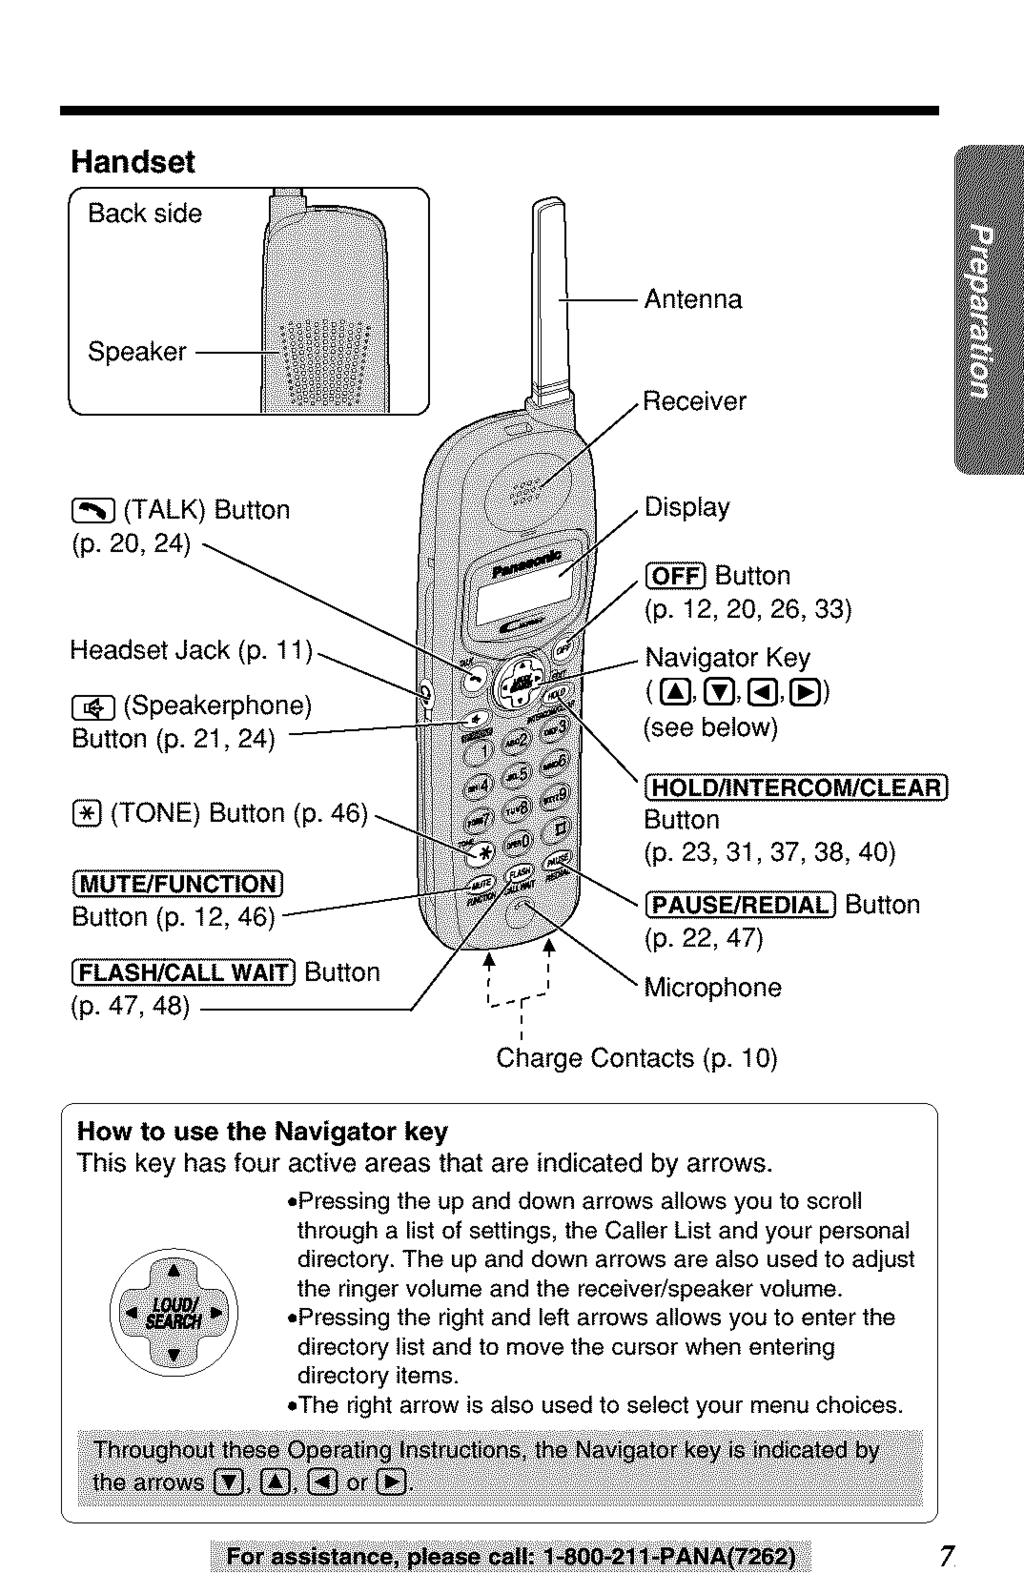 Handset Back side Speaker--!_ I [_ (TALK) Button (p. 20, 24)a_ Headset J. [_ (Speakerphone) Button (p. 21,24) --------- [_ (TONE) Button (p. 46) -_. [MUTE/FUNCTIONJ Button (p.